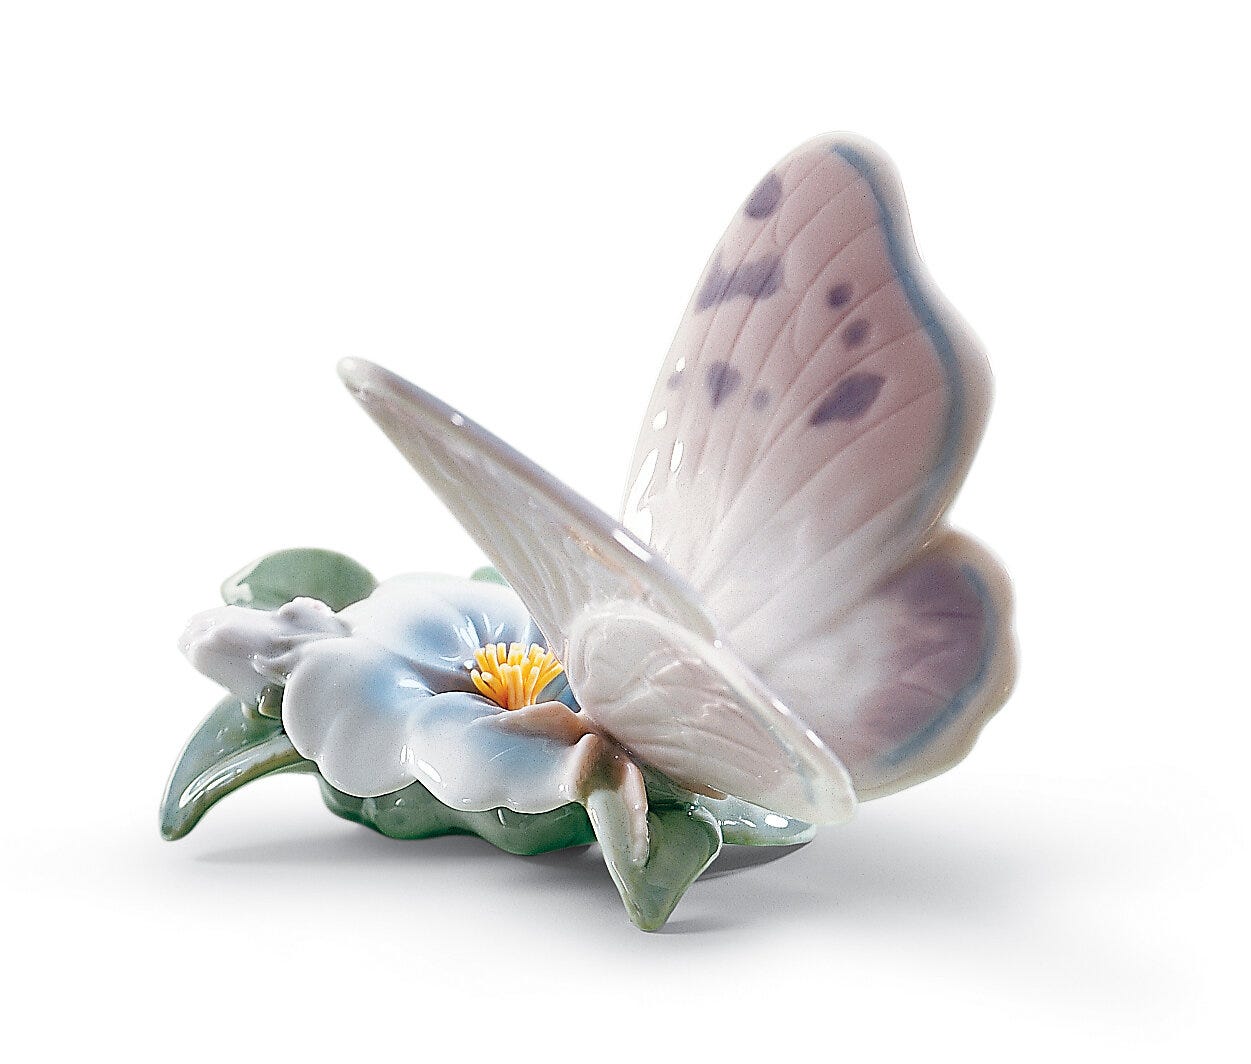 Figurina farfalla pausa rinfrescante